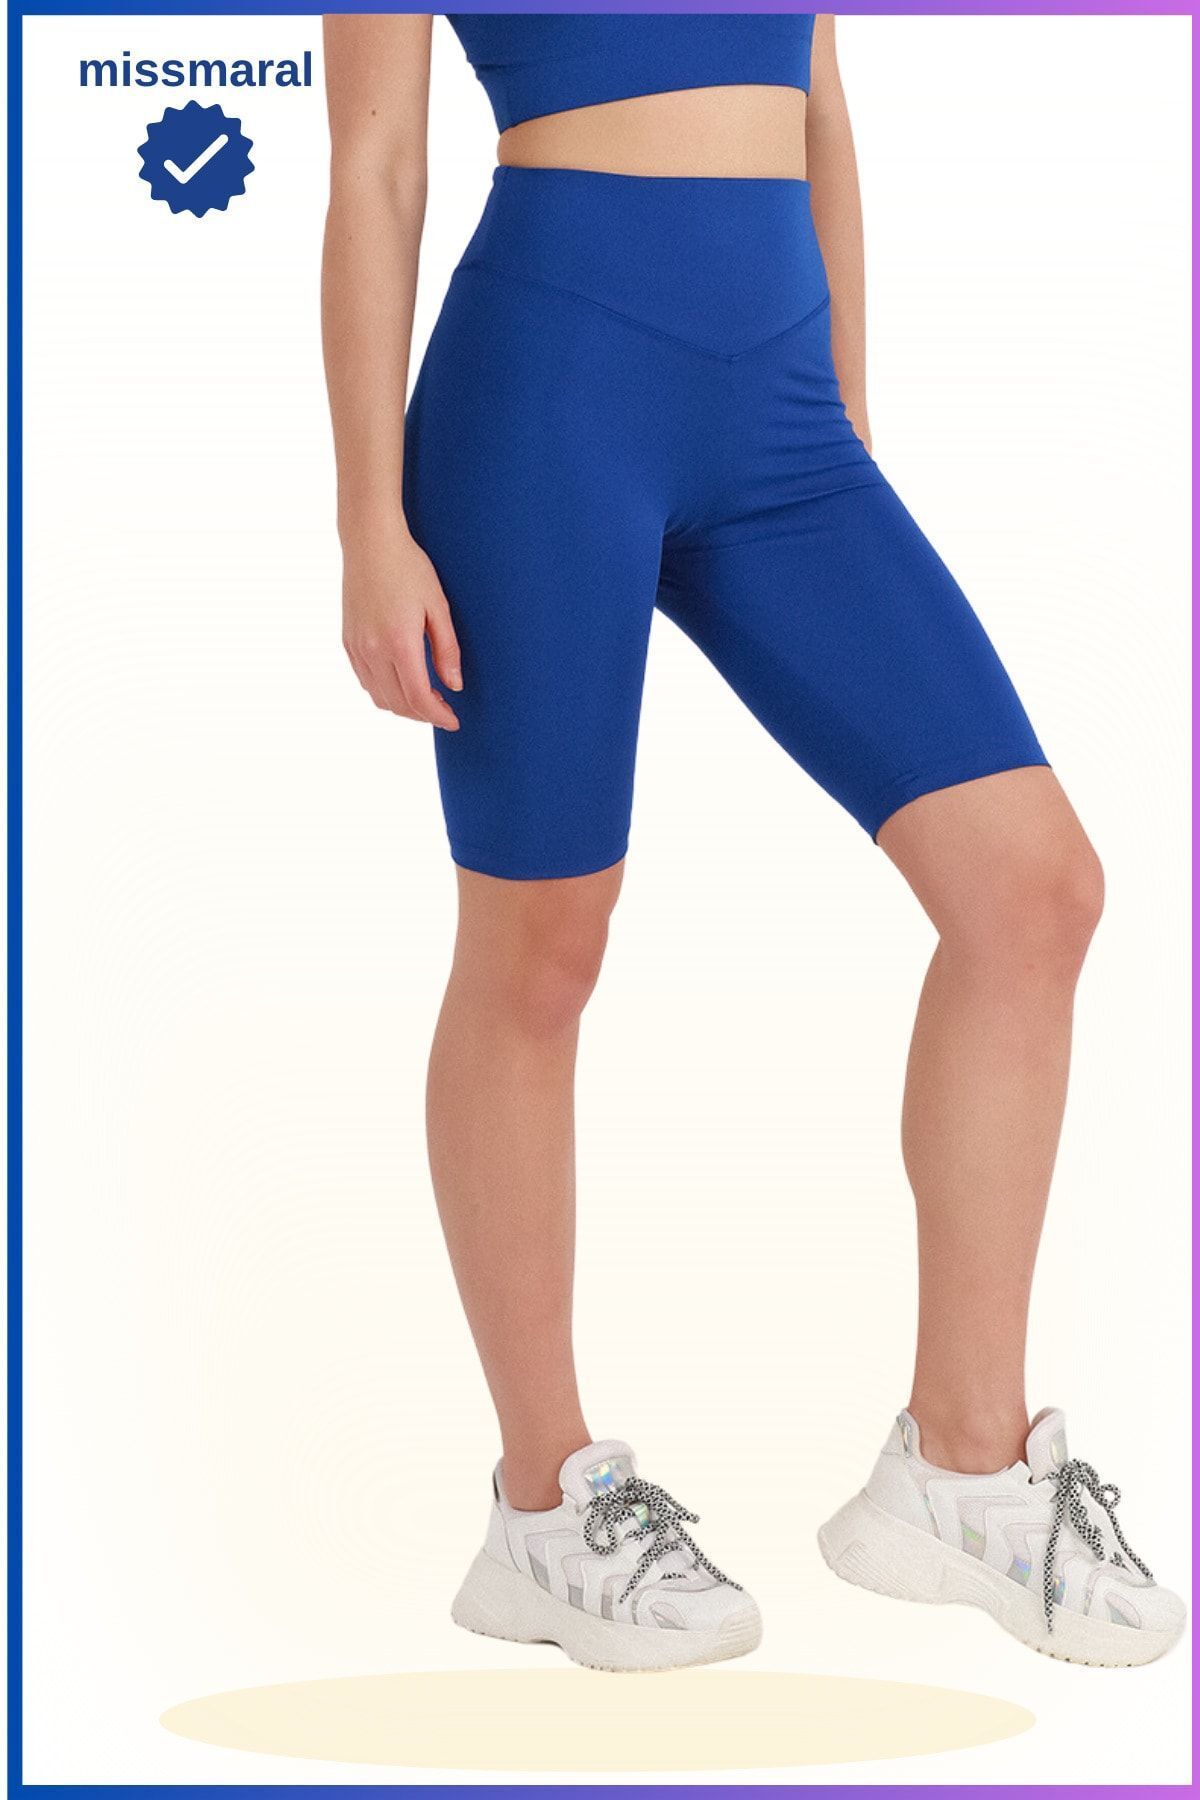 missmaral Kadın Saks Mavi Yüksek Bel Toparlayıcı Kısa Spor Tayt Biker Şort Basics Casual & Comfort 1070